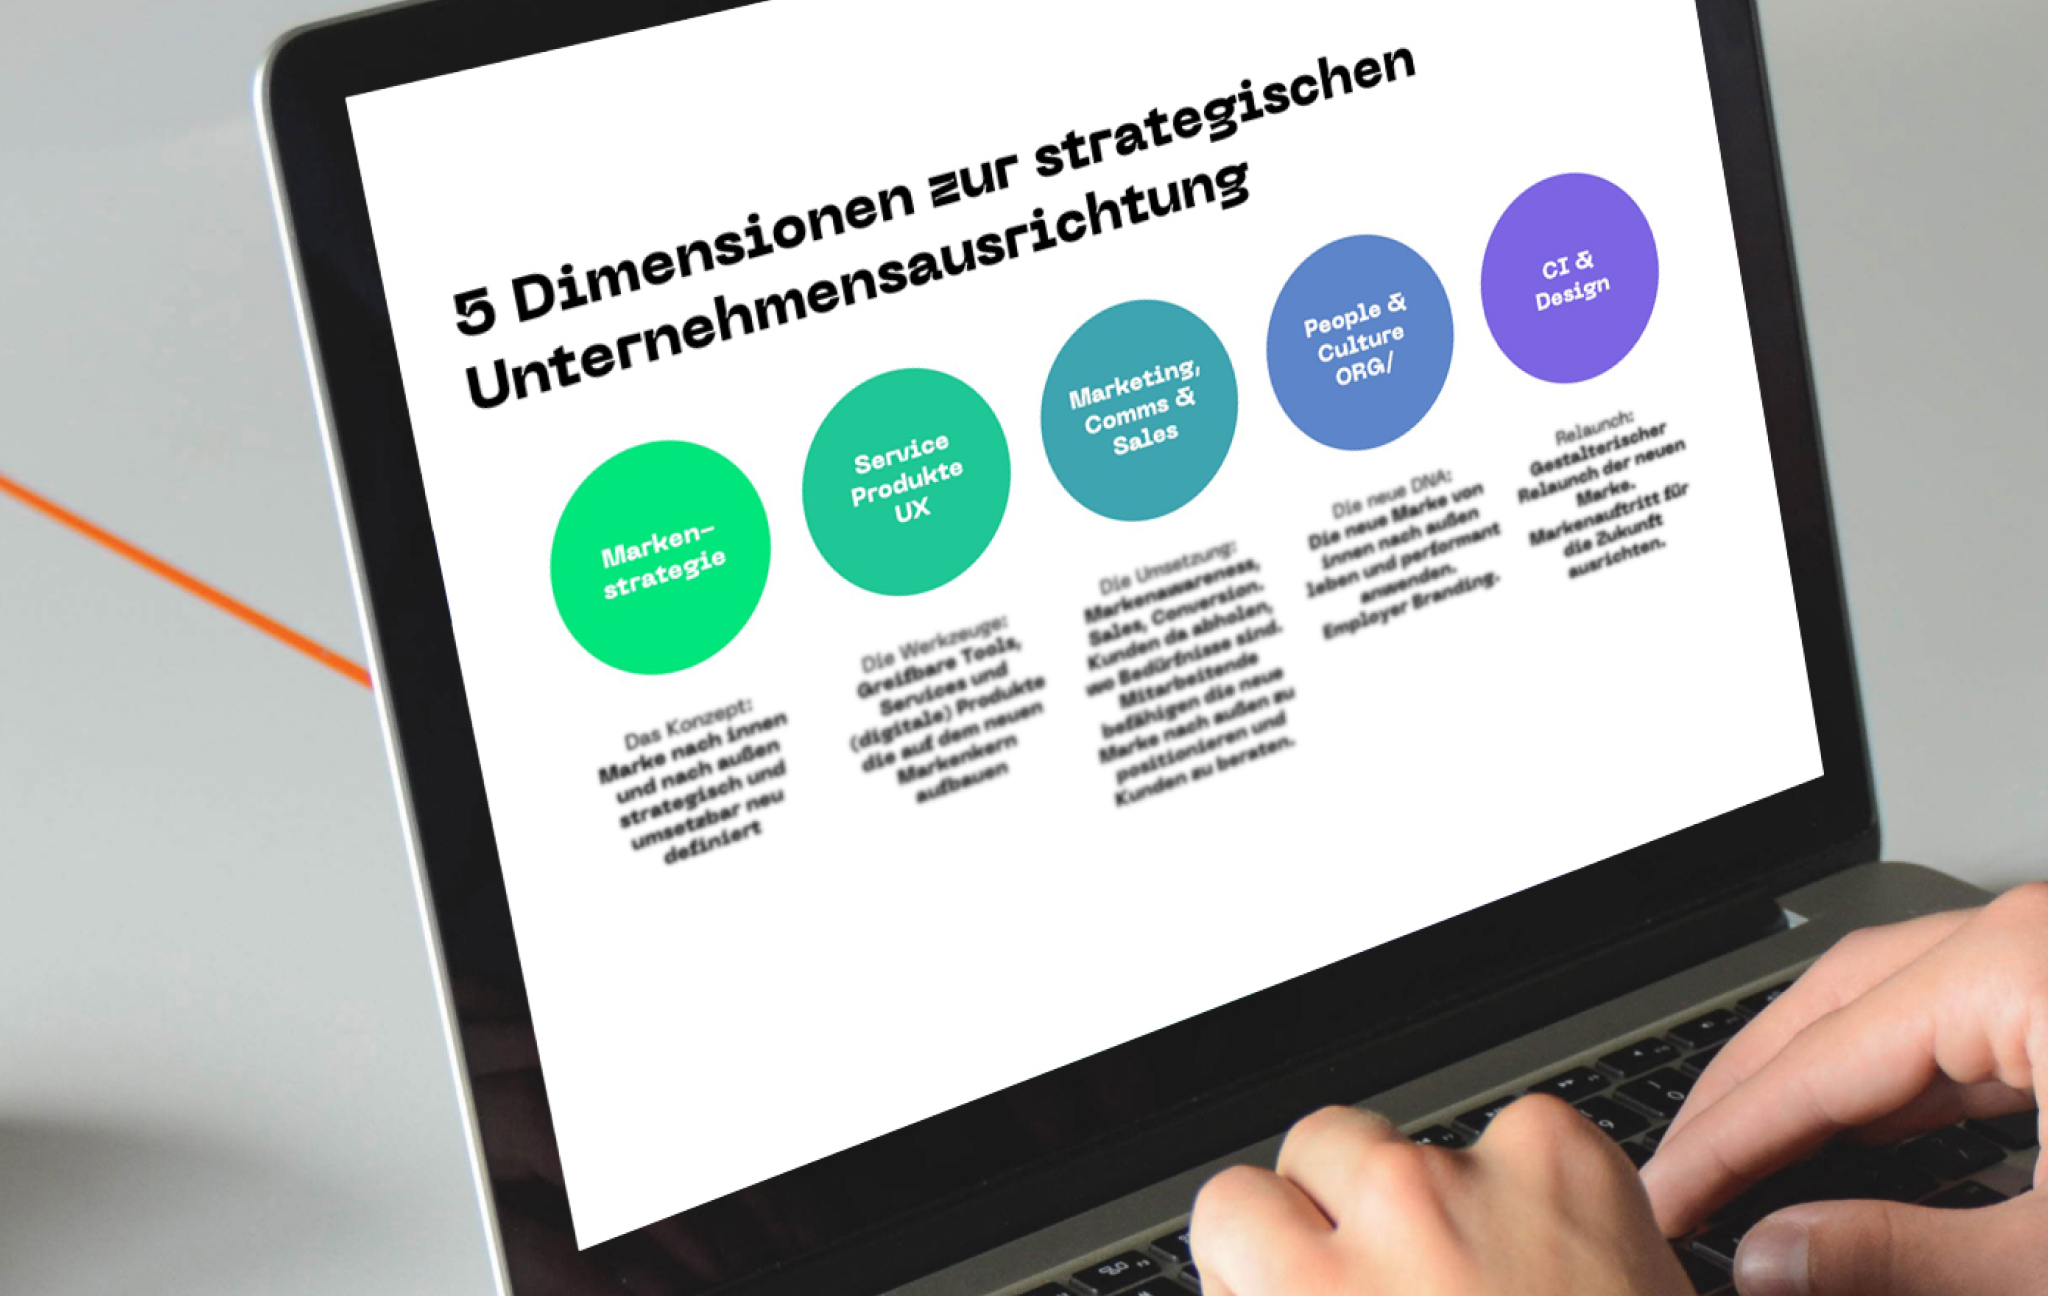 Ein Laptop zeigt 5 Dimensionen zur strategischen Unternehmensausrichtung. Diese sind Marken Strategie, Produktservices, Marketing & Sales, People und Culture und Design.